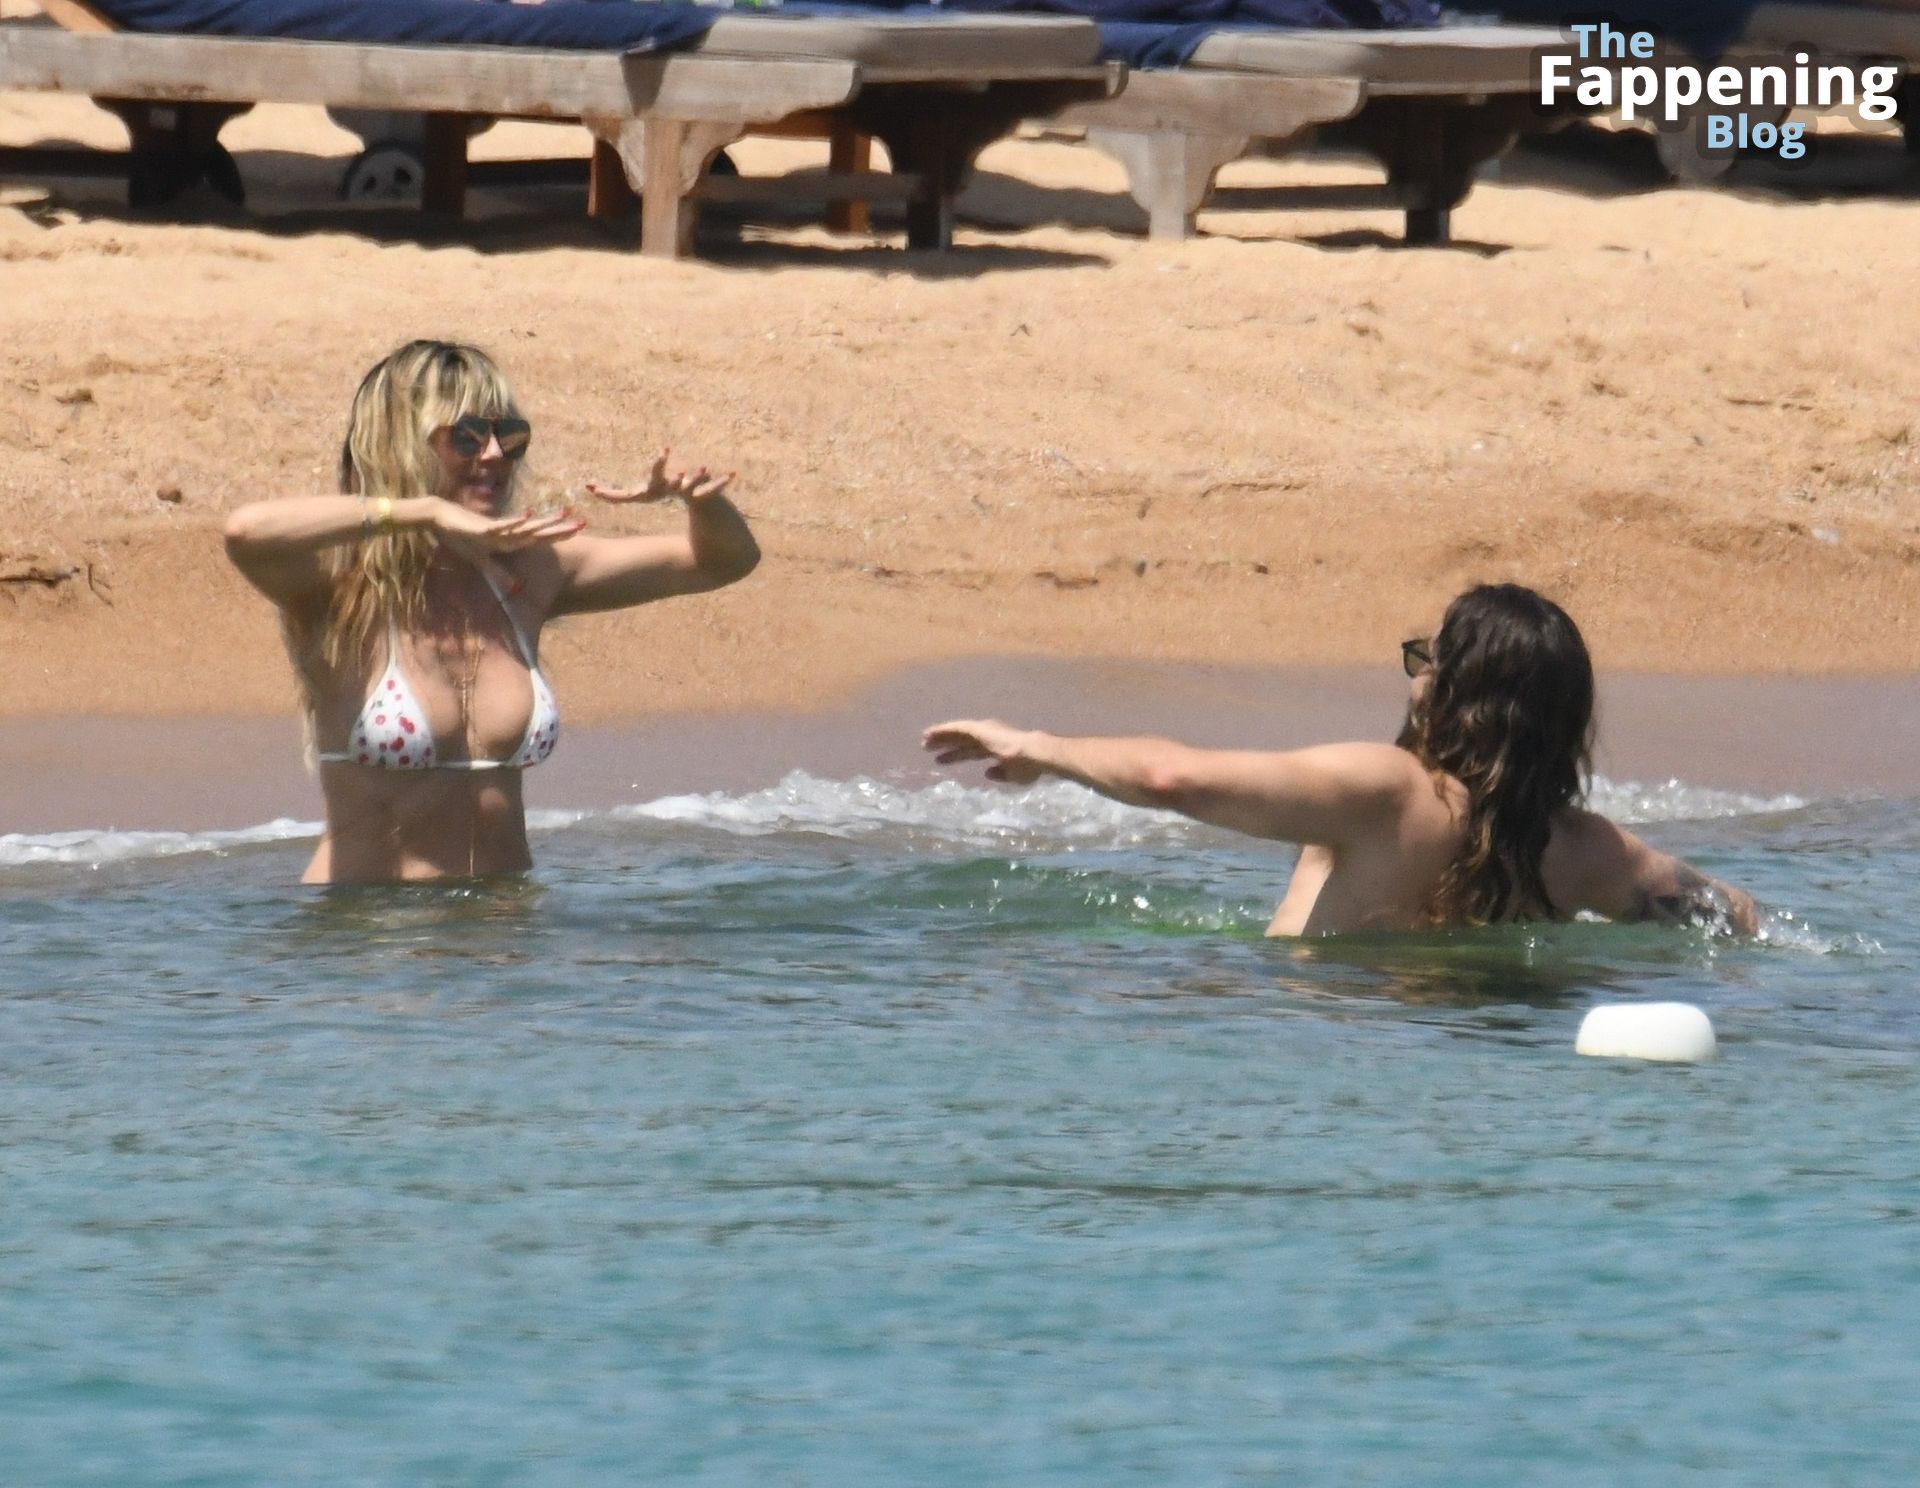 Heidi Klum &amp; Tom Kaulitz Enjoy a Day on the Beach in Sardinia (70 Photos)